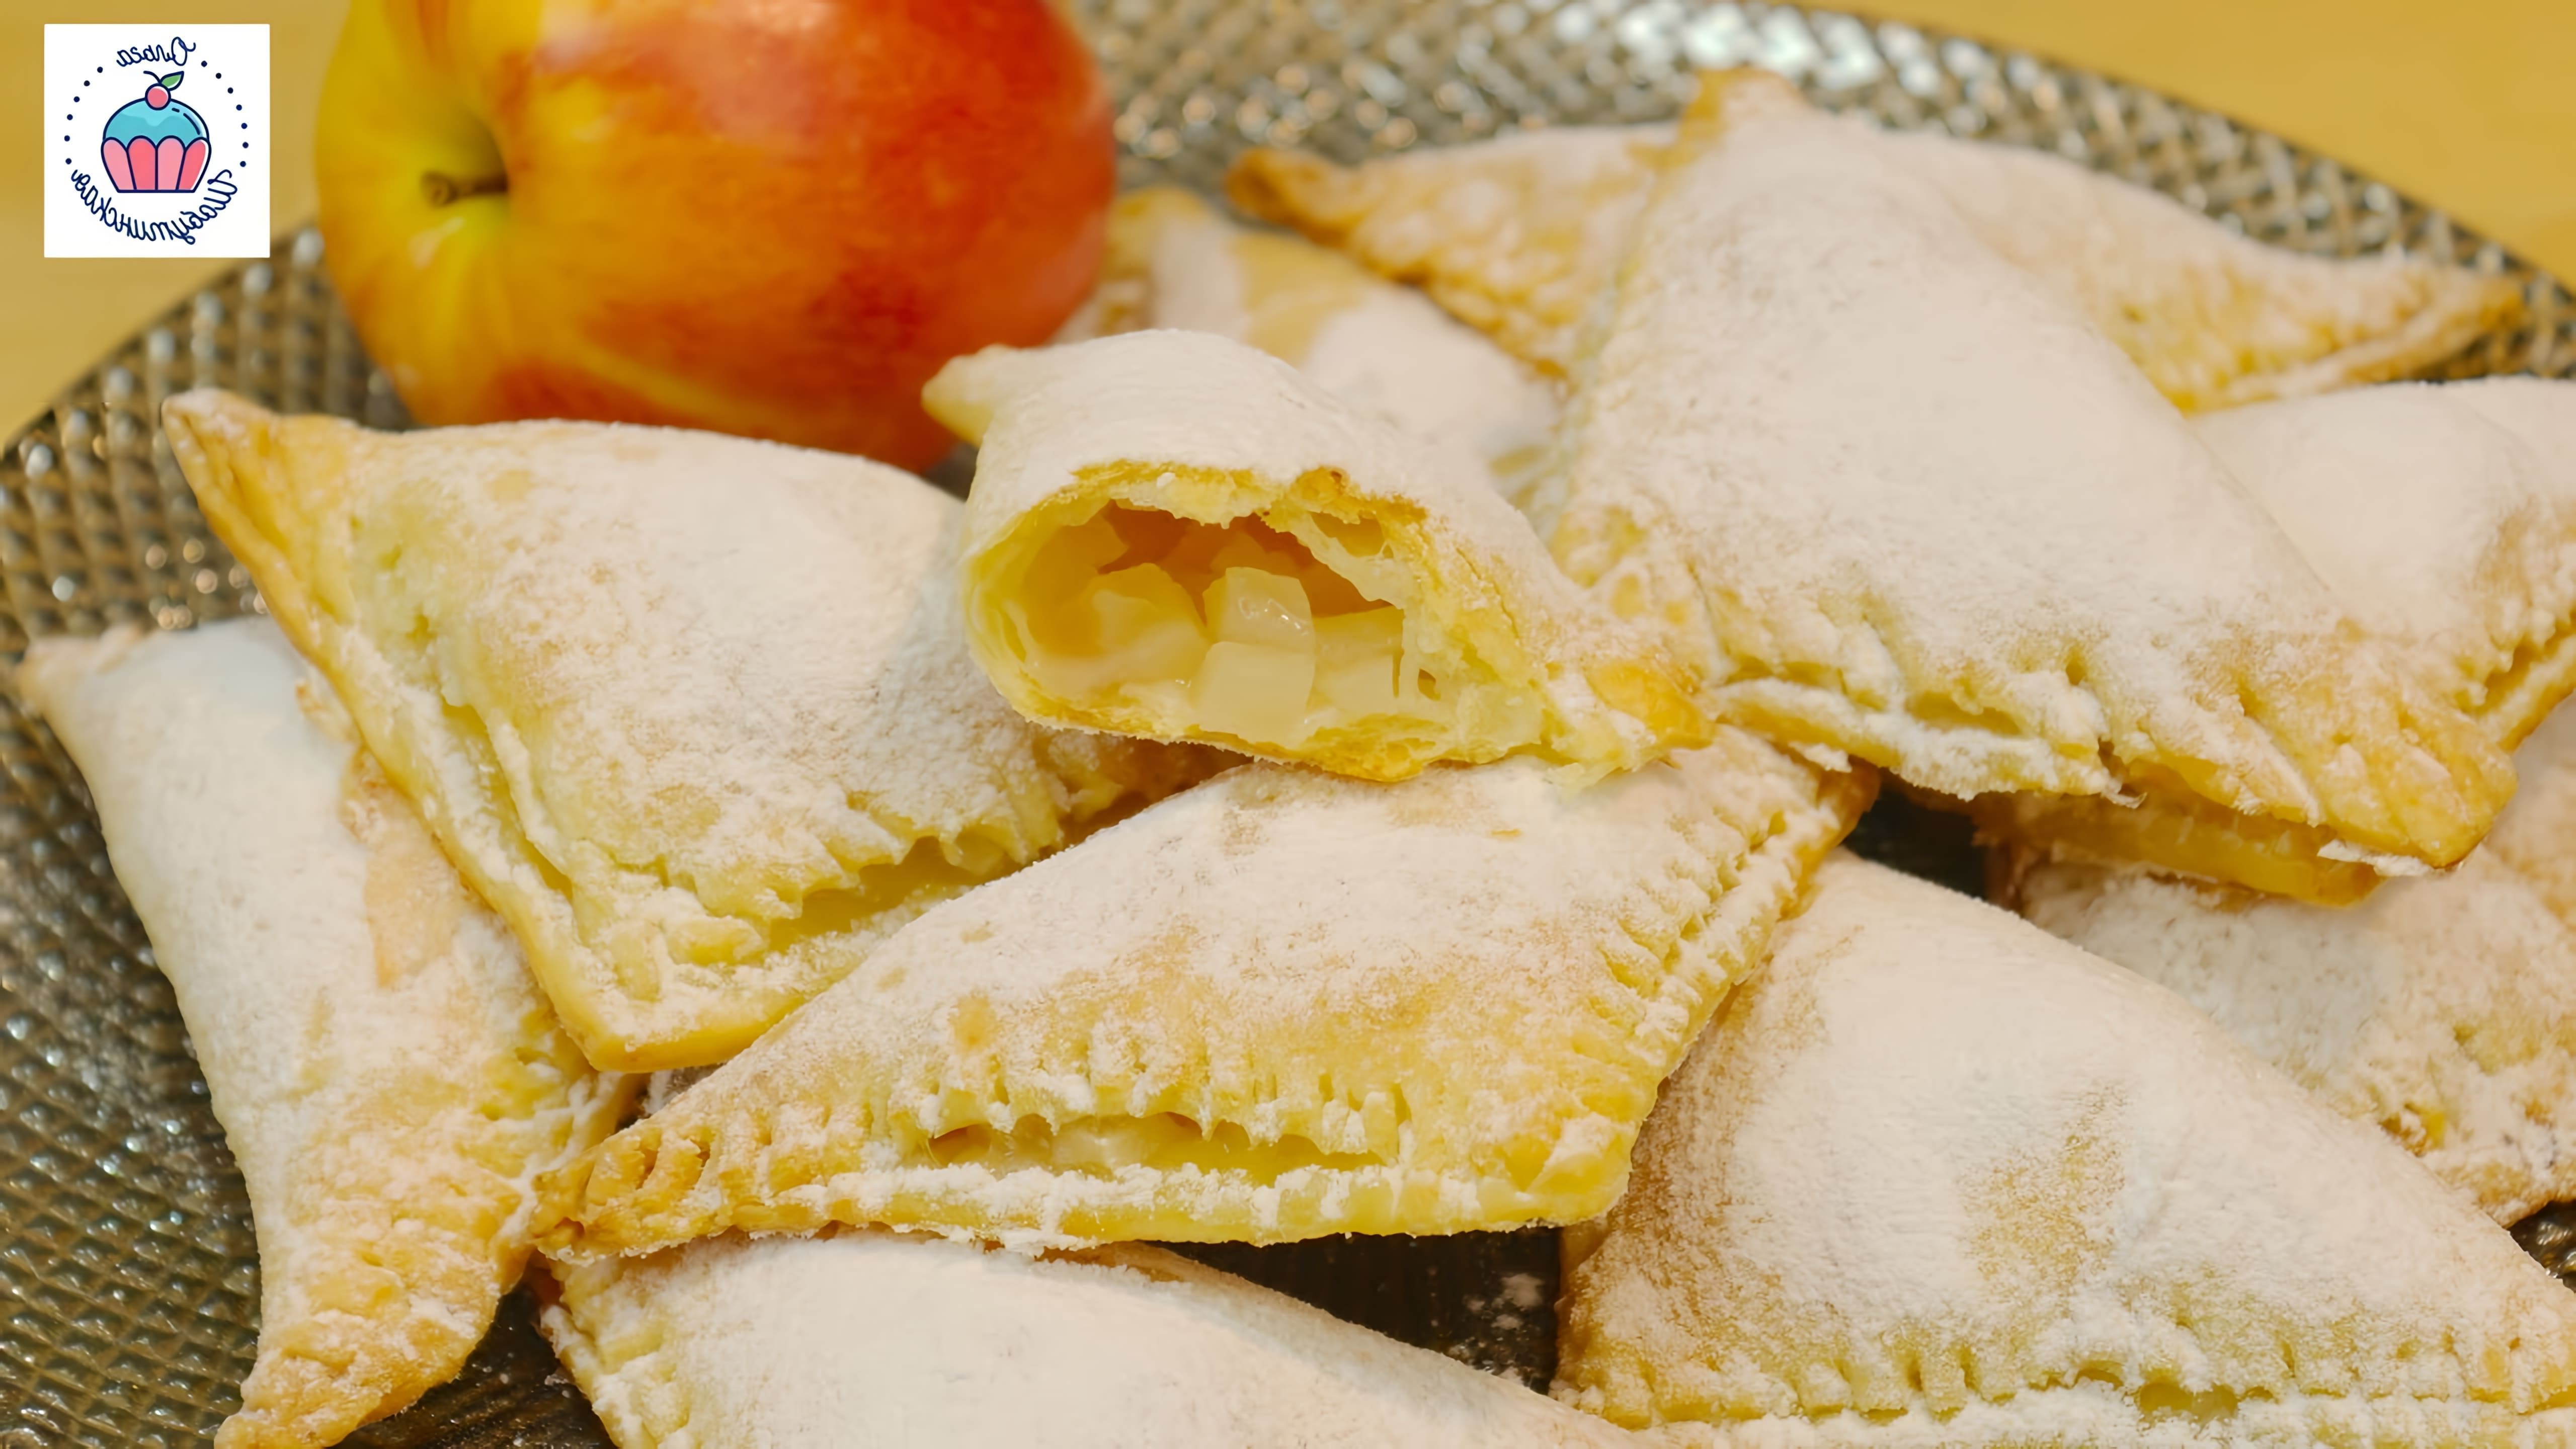 В этом видео демонстрируется рецепт приготовления хрупкого слоеного творожного печенья с яблоками